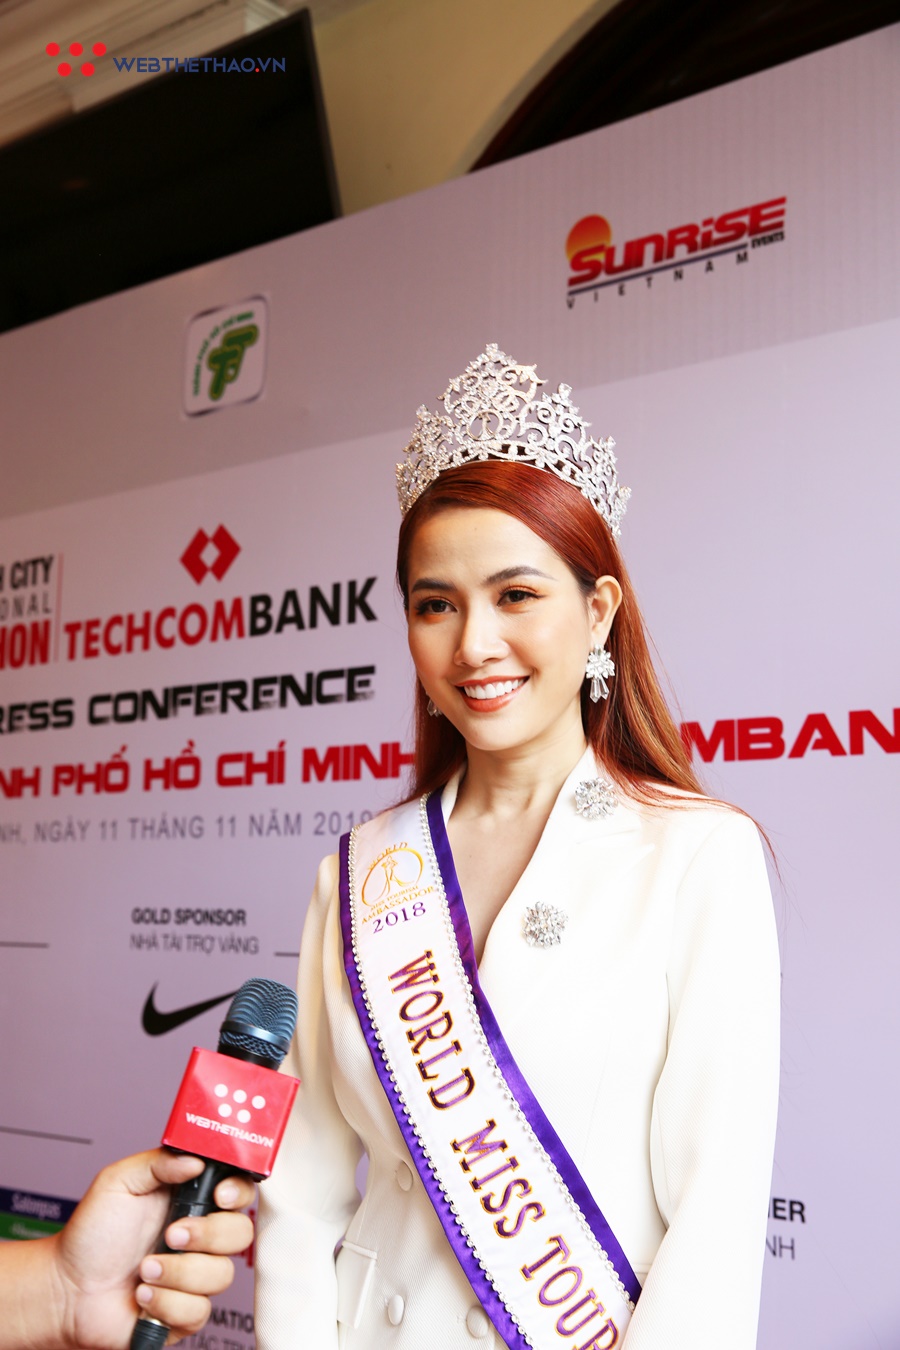 Hoa hậu Phan Thị Mơ thử sức với cự ly 10km giải Marathon Quốc tế TPHCM Techcombank 2019